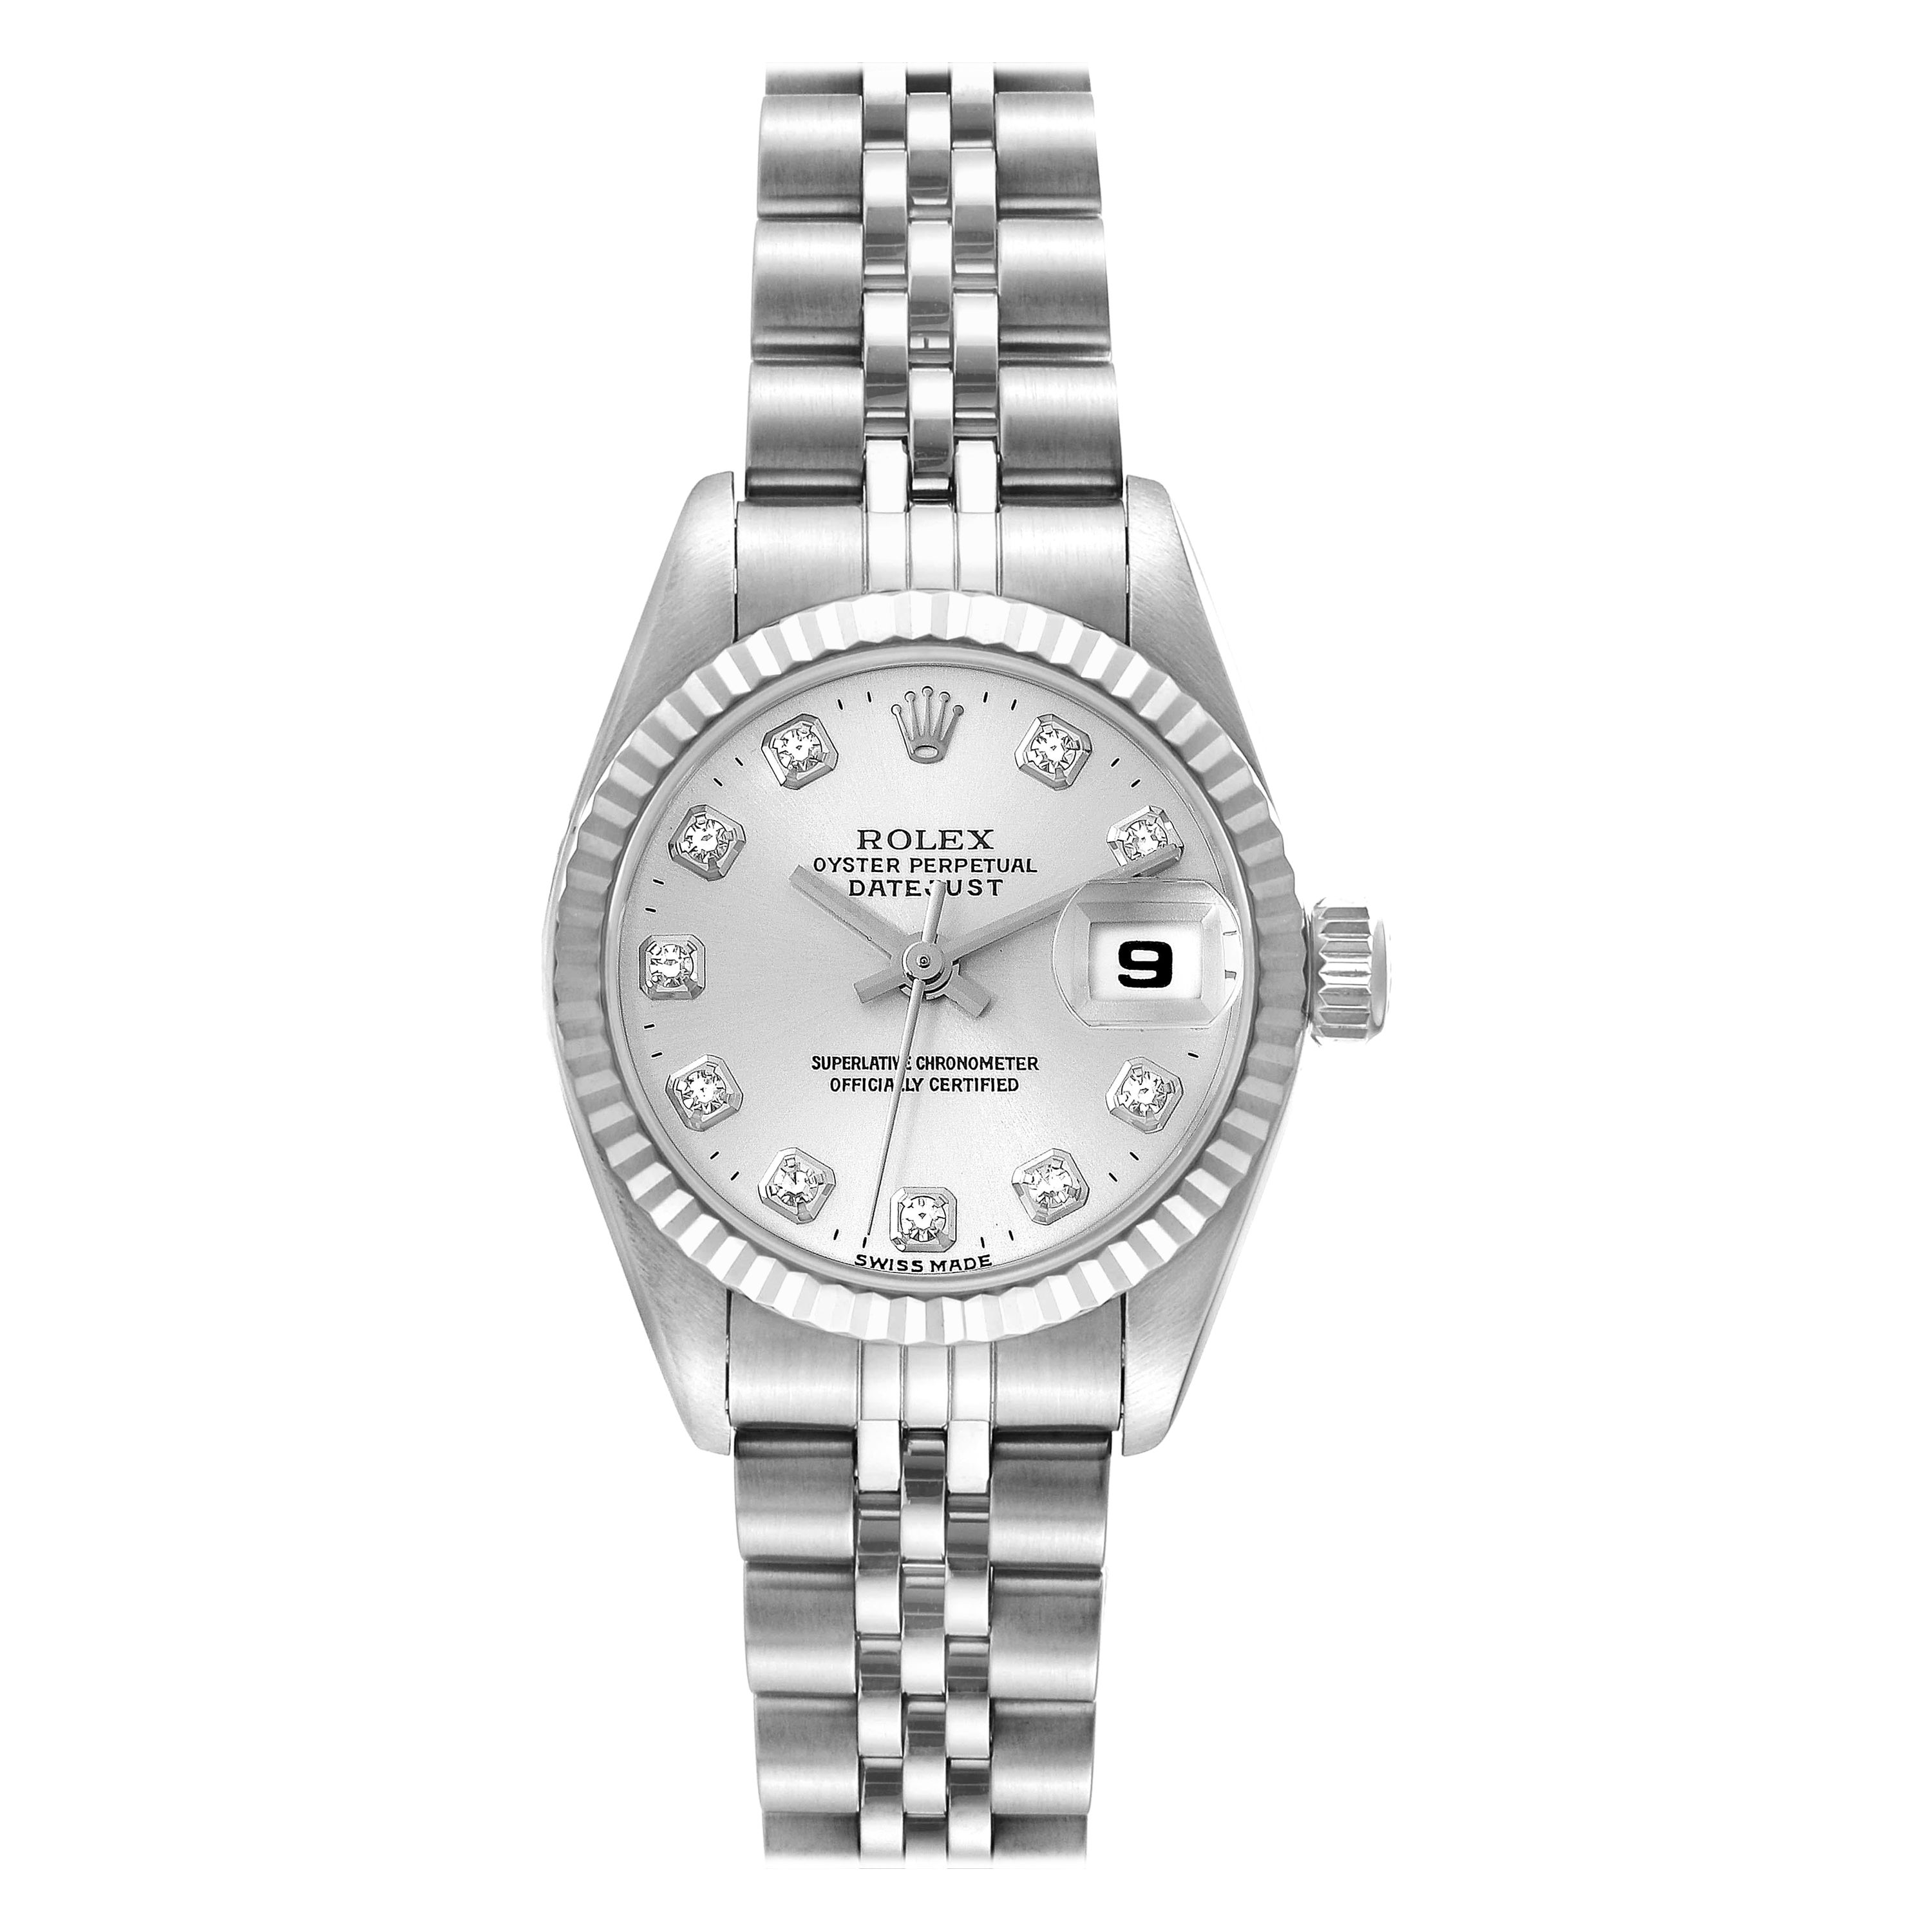 Rolex Montre Datejust en acier, or blanc et cadran en diamant, pour femmes 69174